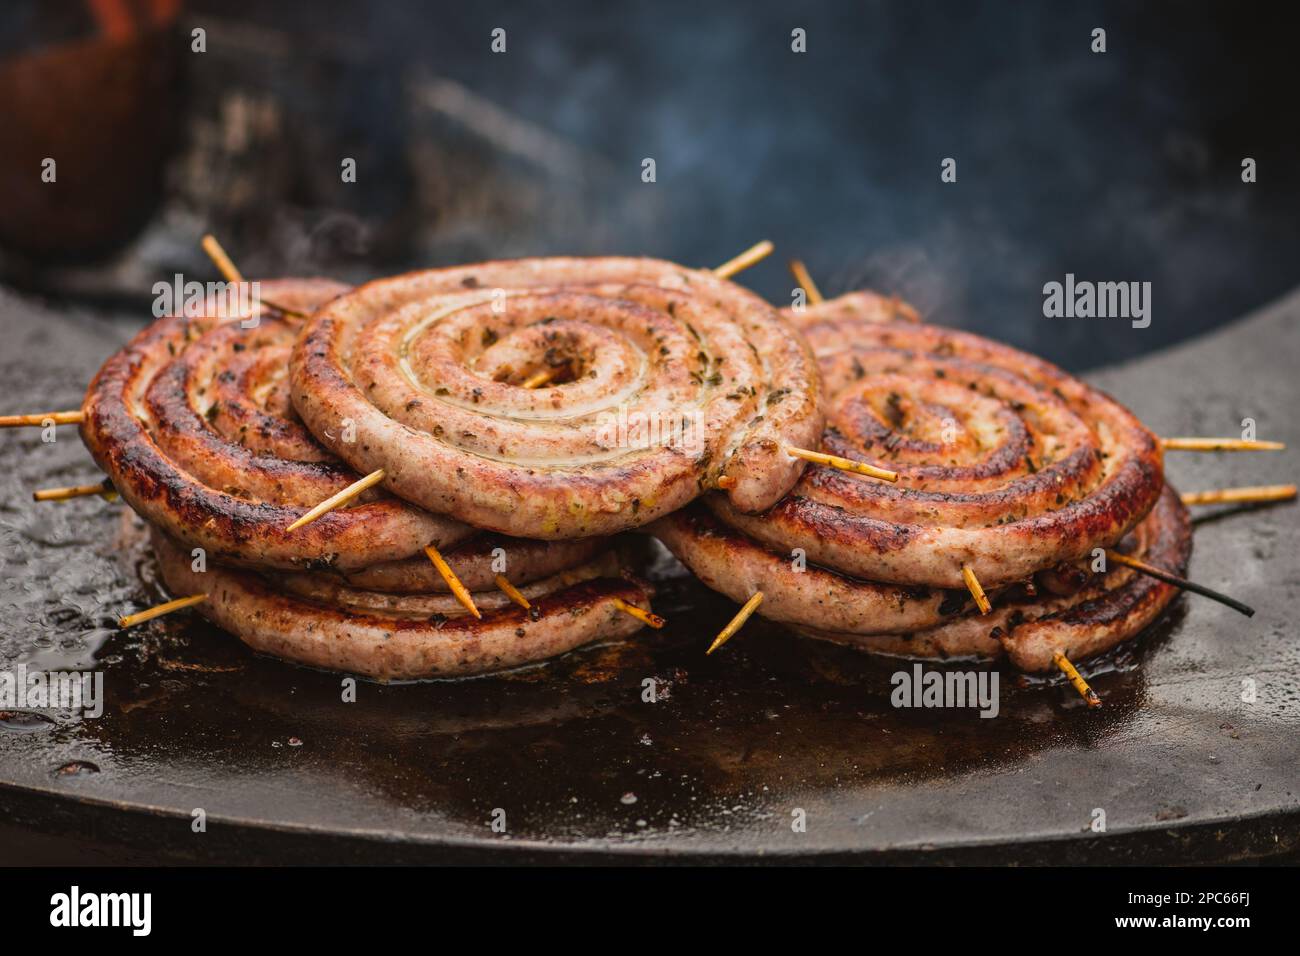 Salsicce arrotolate a spirale preparate con carne macinata alla griglia o arrostite in un barbecue sul fuoco aperto Foto Stock